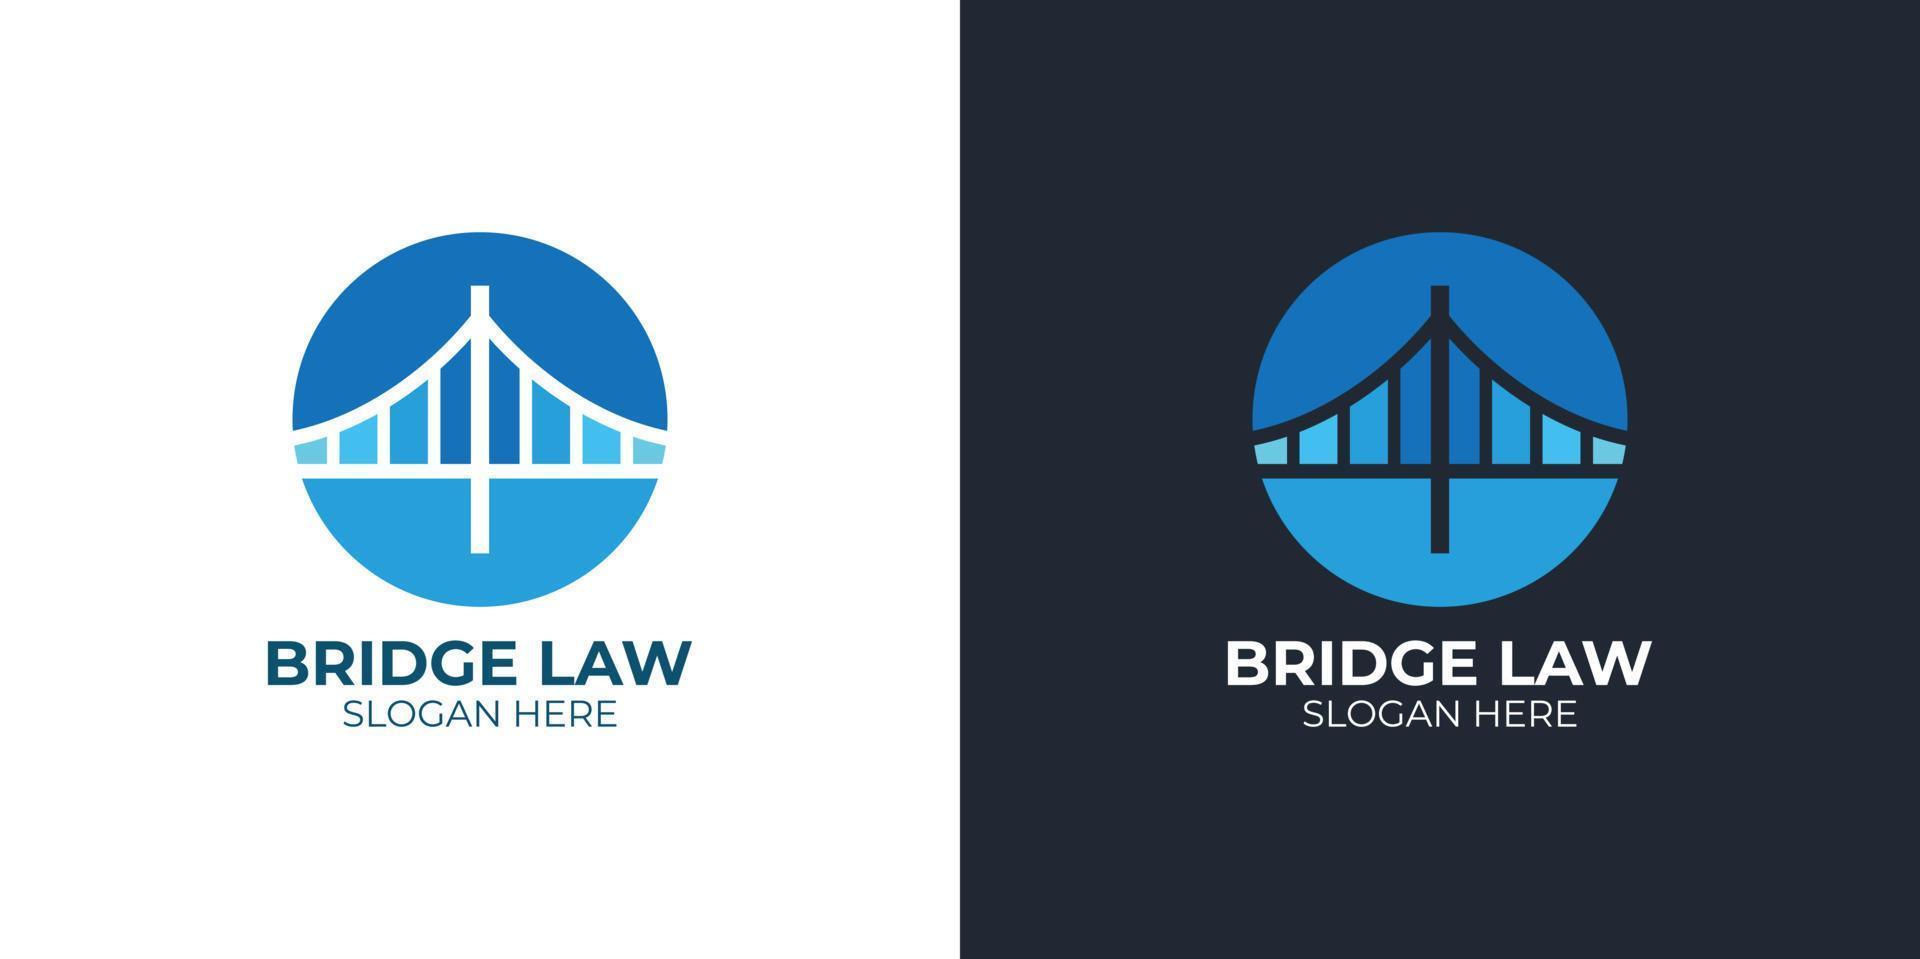 conjunto de logotipo de ley de puente elegante minimalista vector